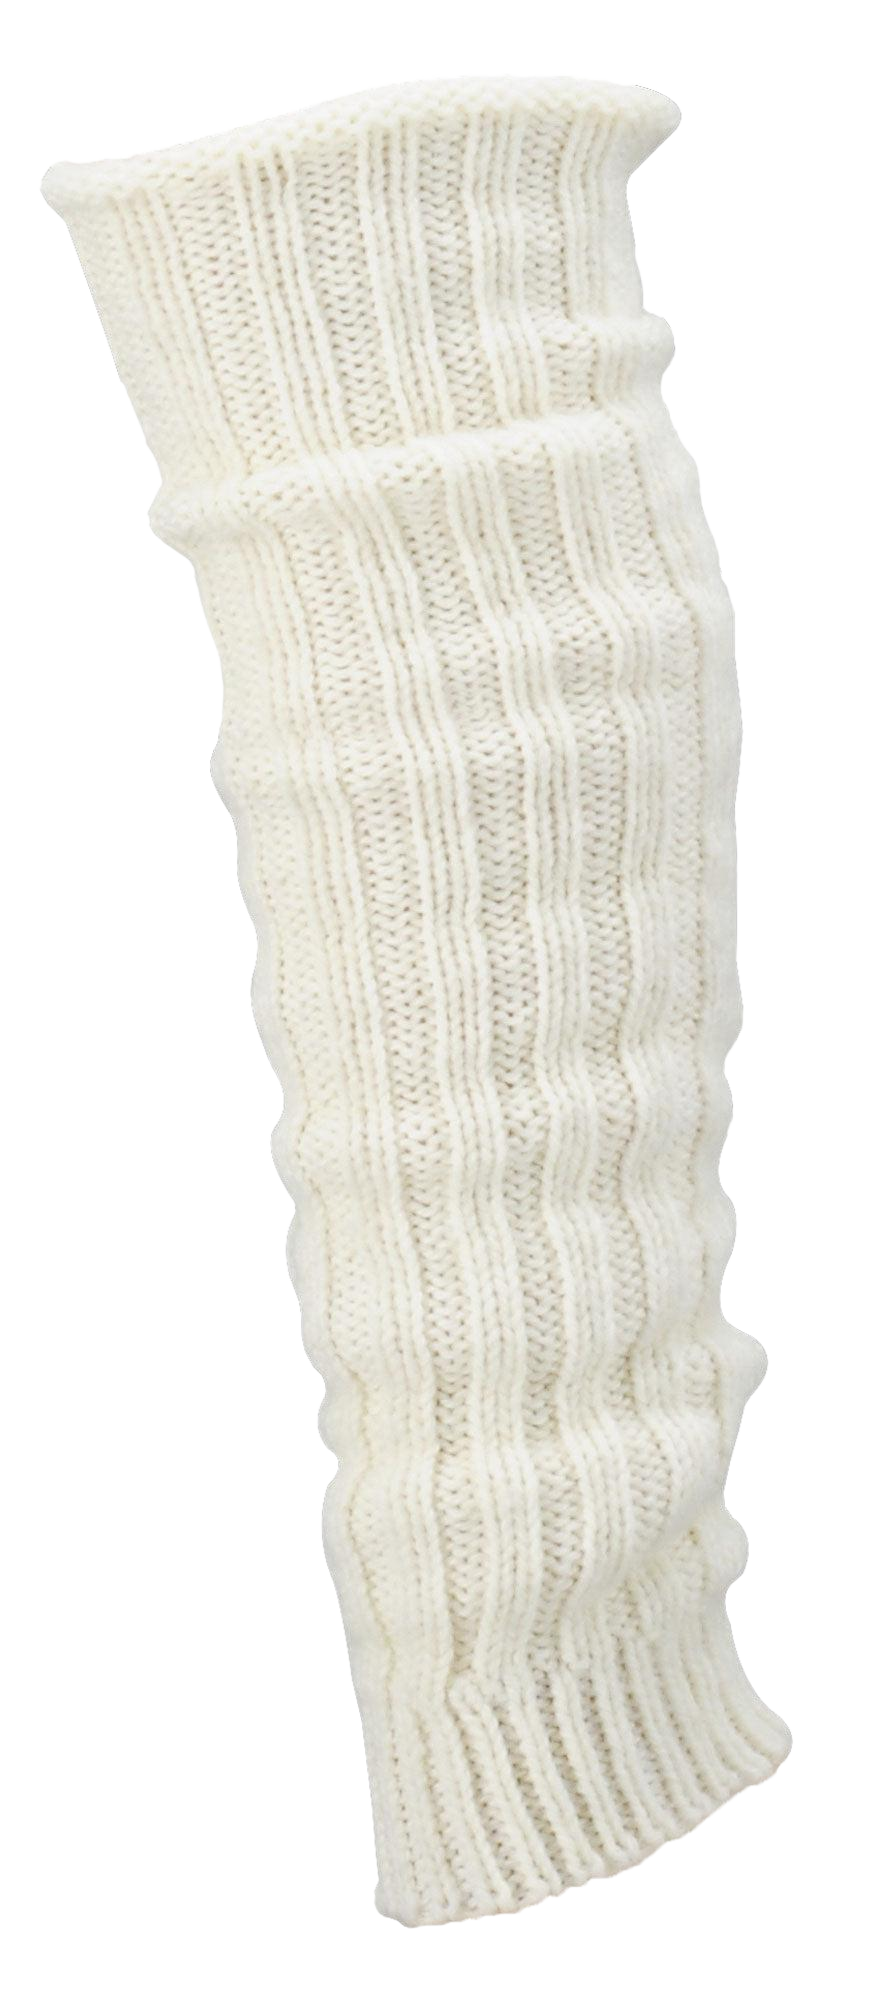 Grobstrick Stulpen Alpakawolle Legwamer Beinwärmer Wadenwärmer sind hier in der Farbe weiß abgebildet.